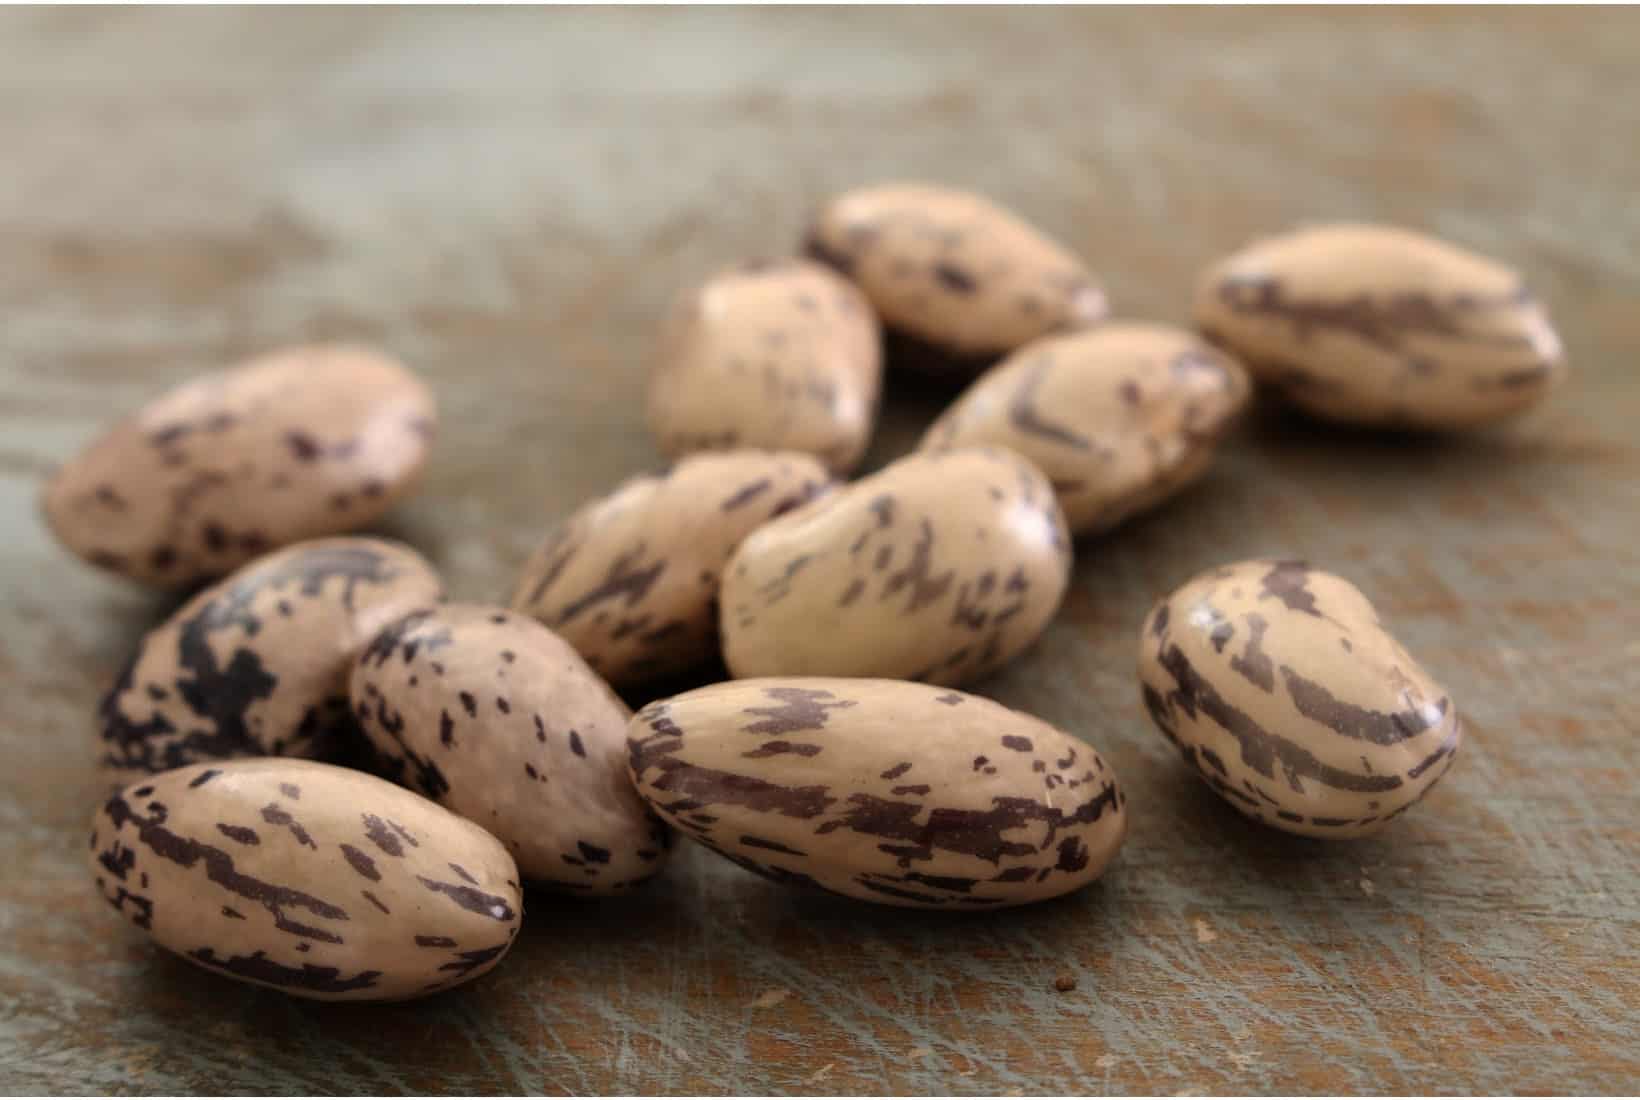 borlotti beans on a wooden surface.